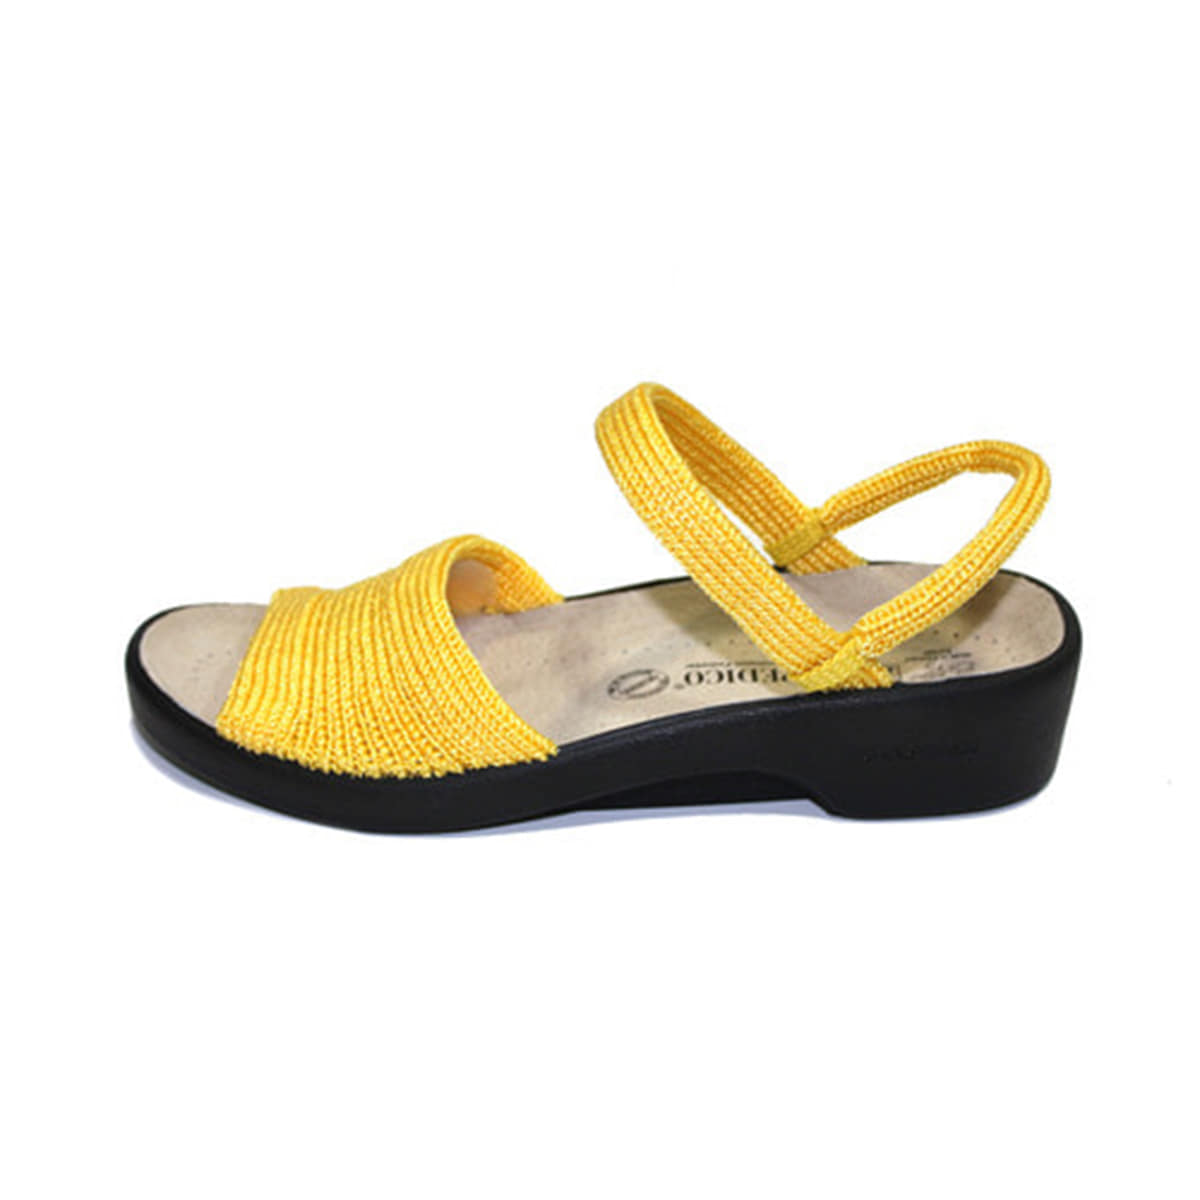 아코페디코 1211 옐로우 니트슬리퍼 (Yellow Knit Slippers)